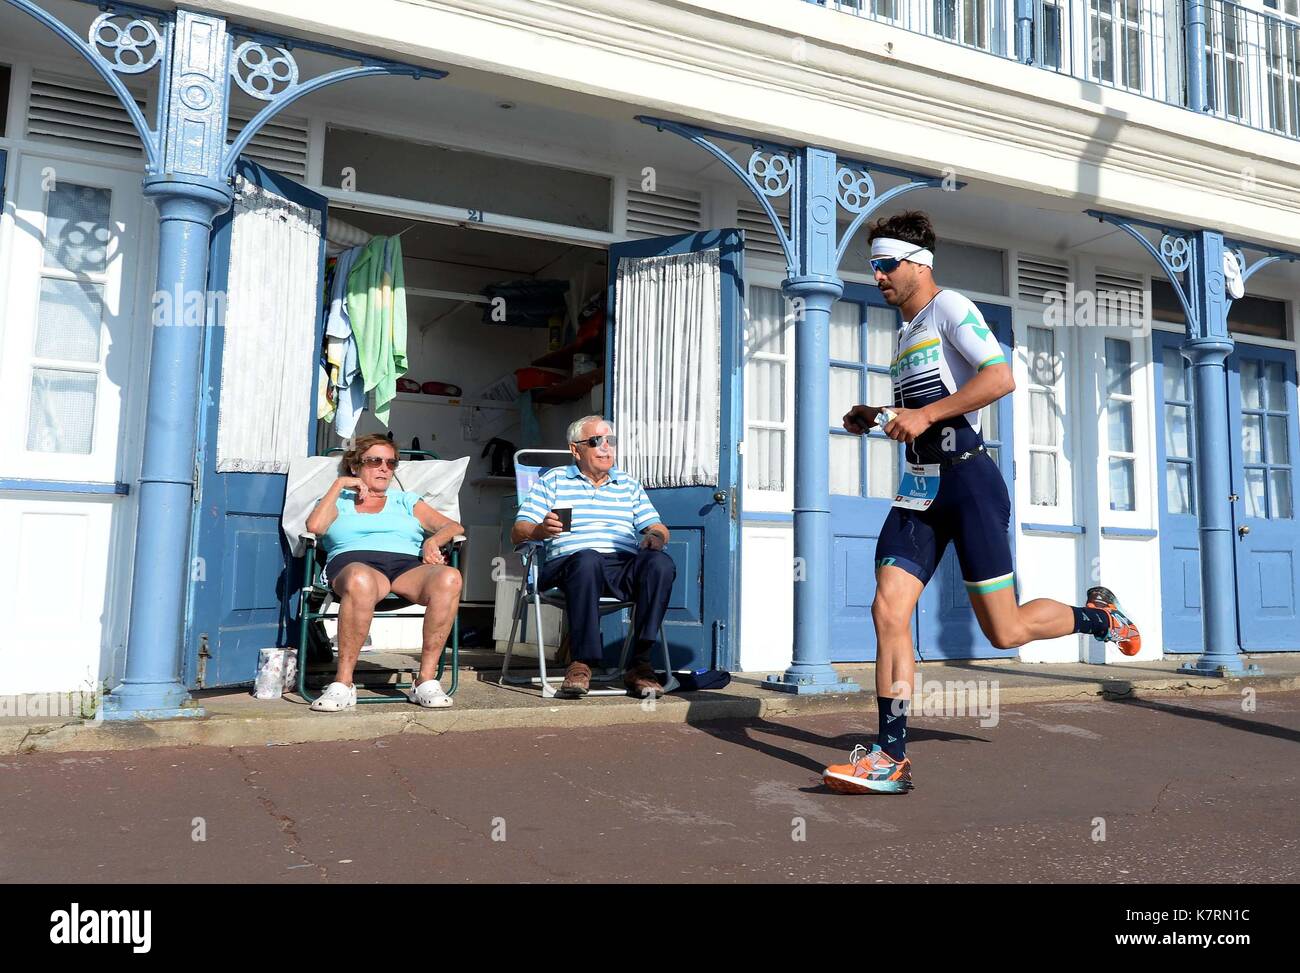 Ironman 70.3 Wettbewerber während der laufenden Phase. Credit: Finnbarr Webster/Alamy leben Nachrichten Stockfoto